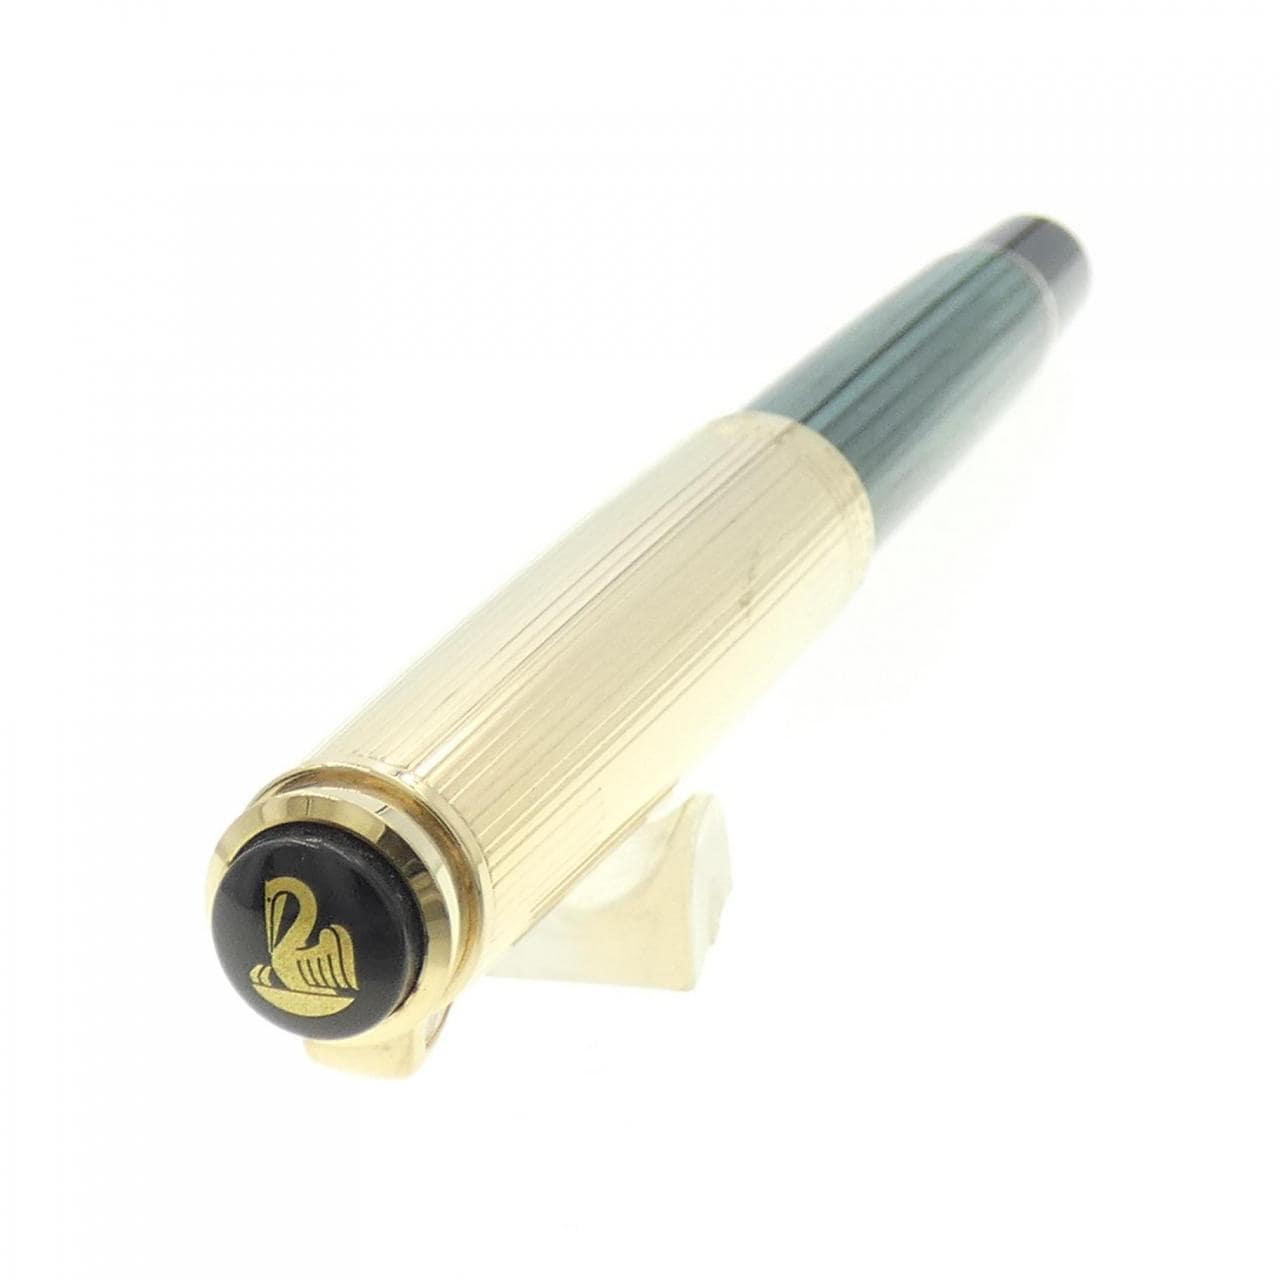 ペリカン スーベレーンM650バーメイル/緑縞 万年筆